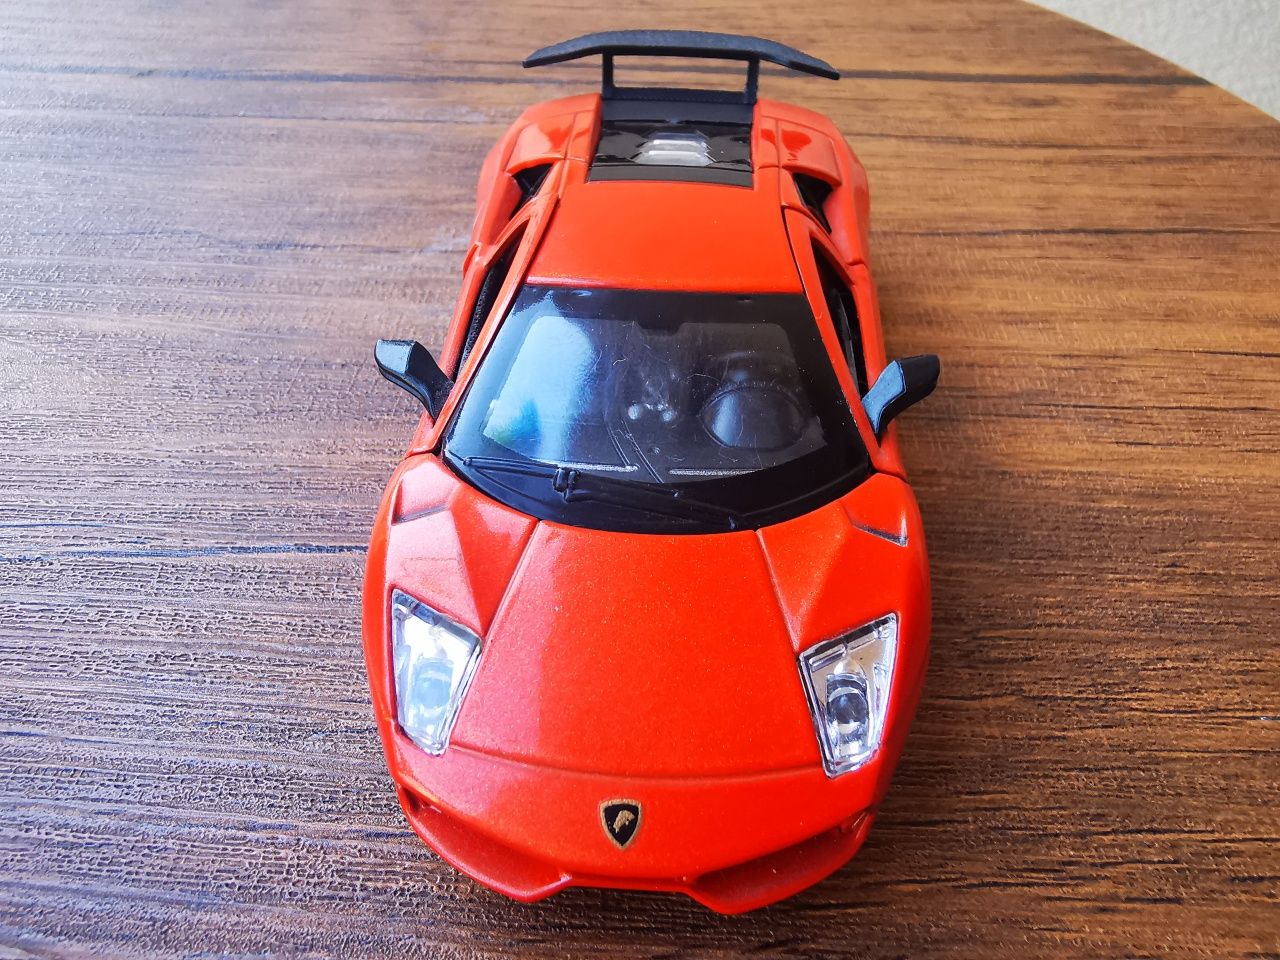 Mașini gen Lamborghini și Ferrari metal